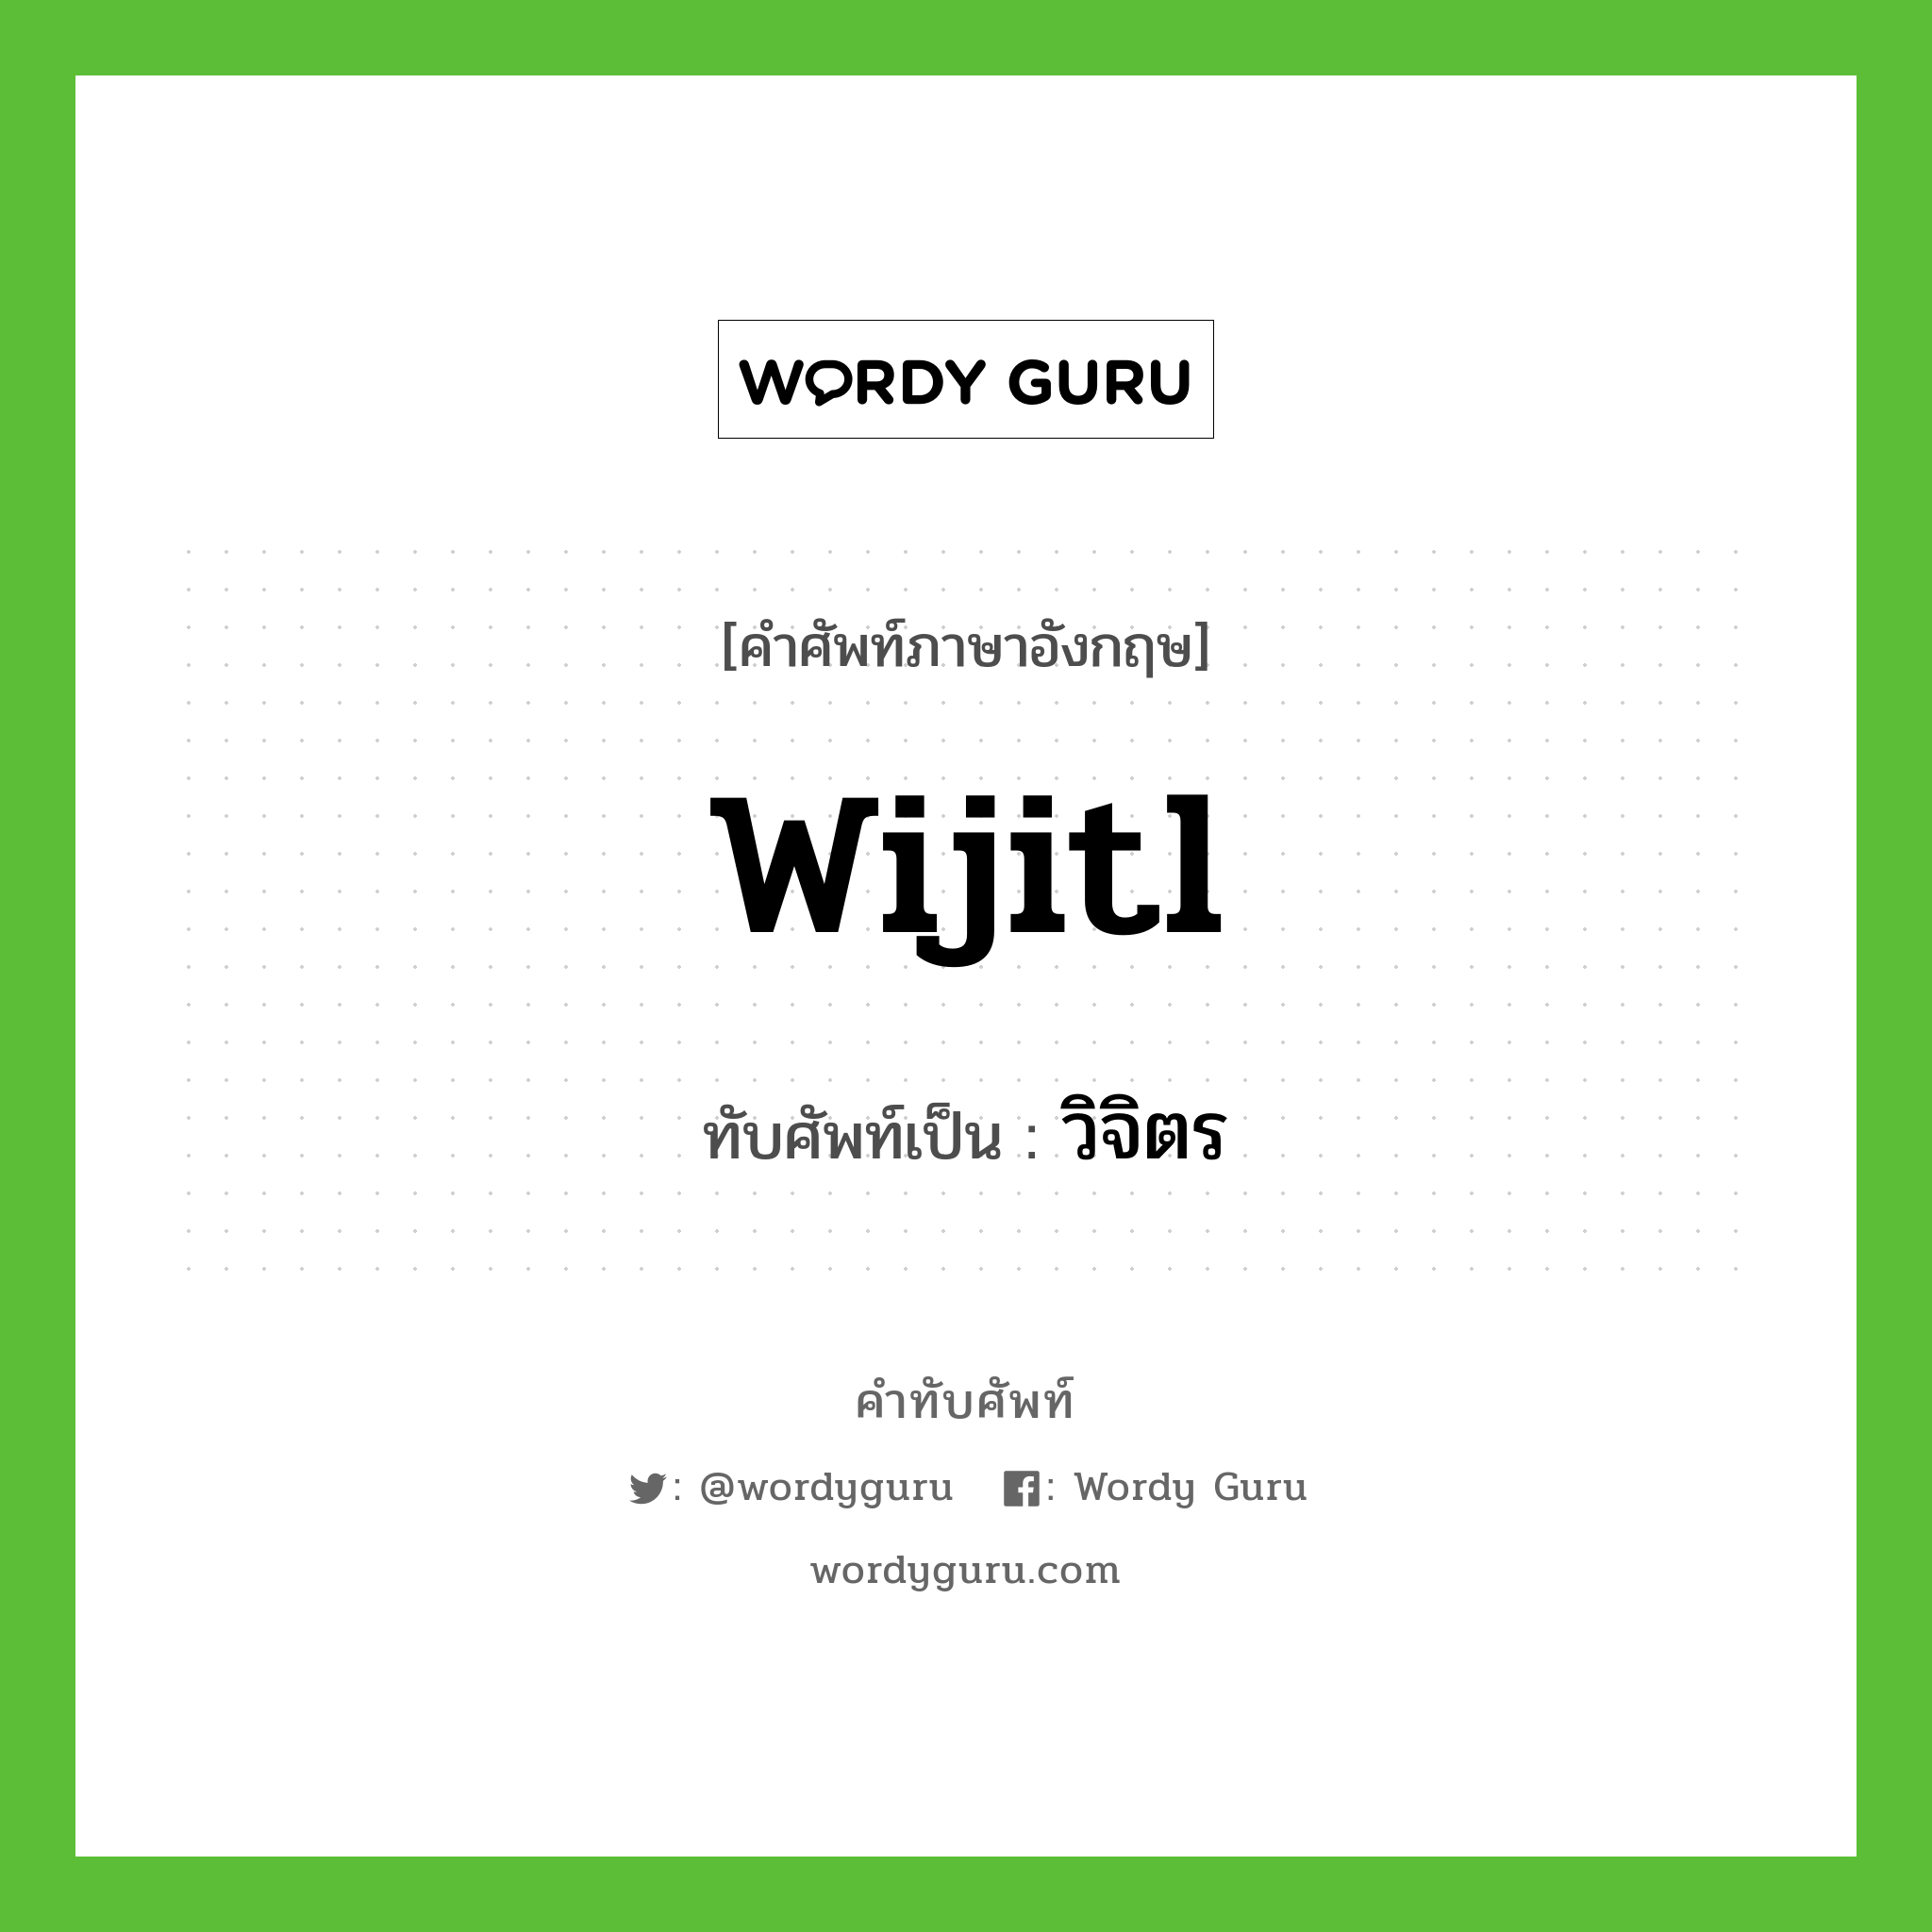 wijitl เขียนเป็นคำไทยว่าอะไร?, คำศัพท์ภาษาอังกฤษ wijitl ทับศัพท์เป็น วิจิตร